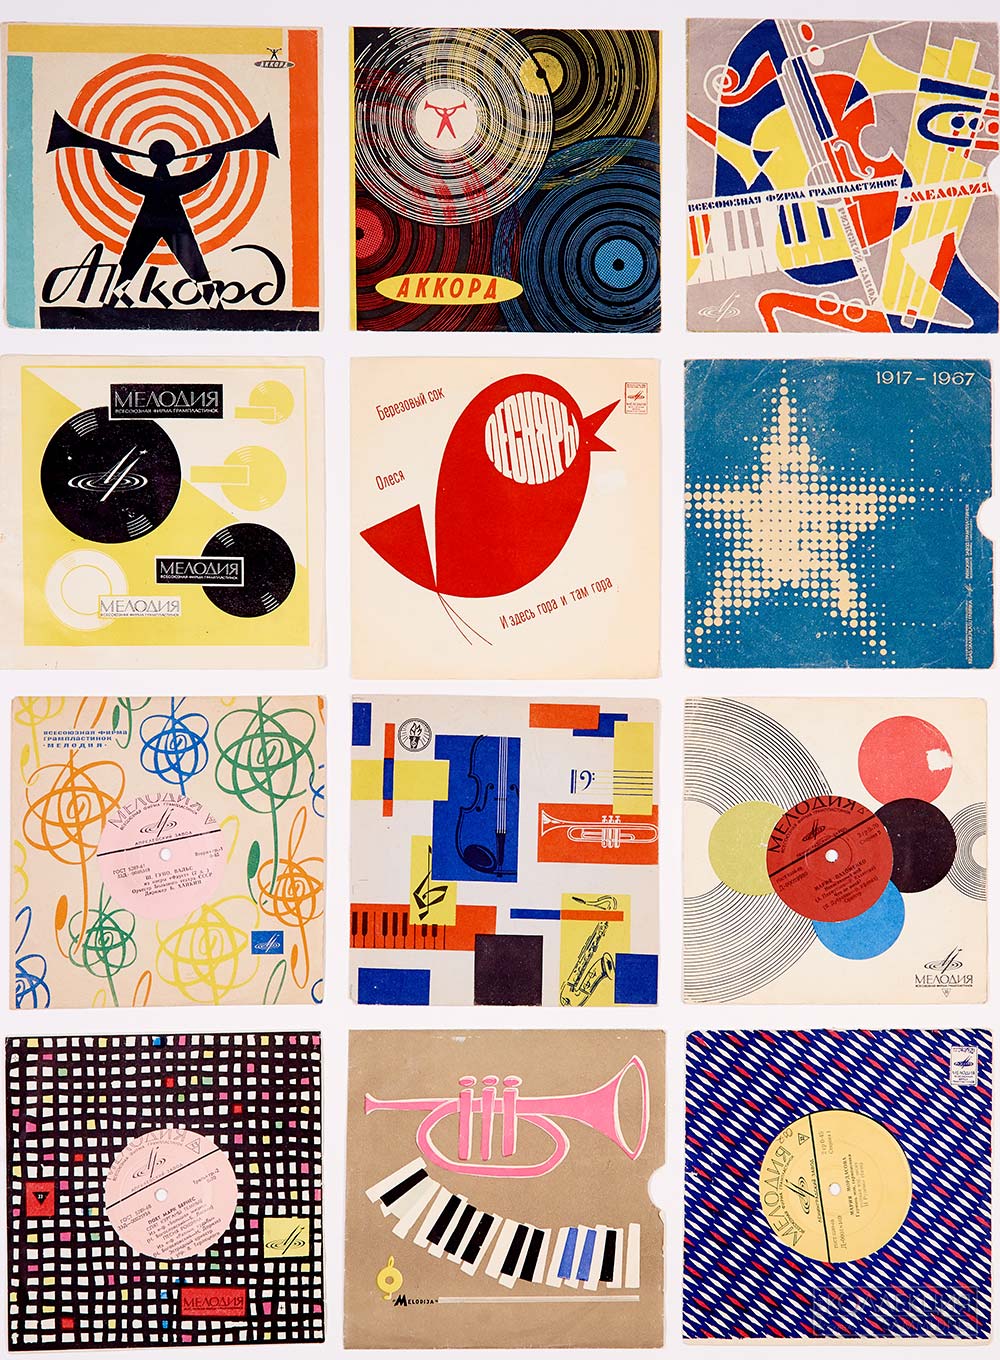 Пластинки фирмы Мелодия, 1960-1980-е годы, из коллекции Московского музея дизайна